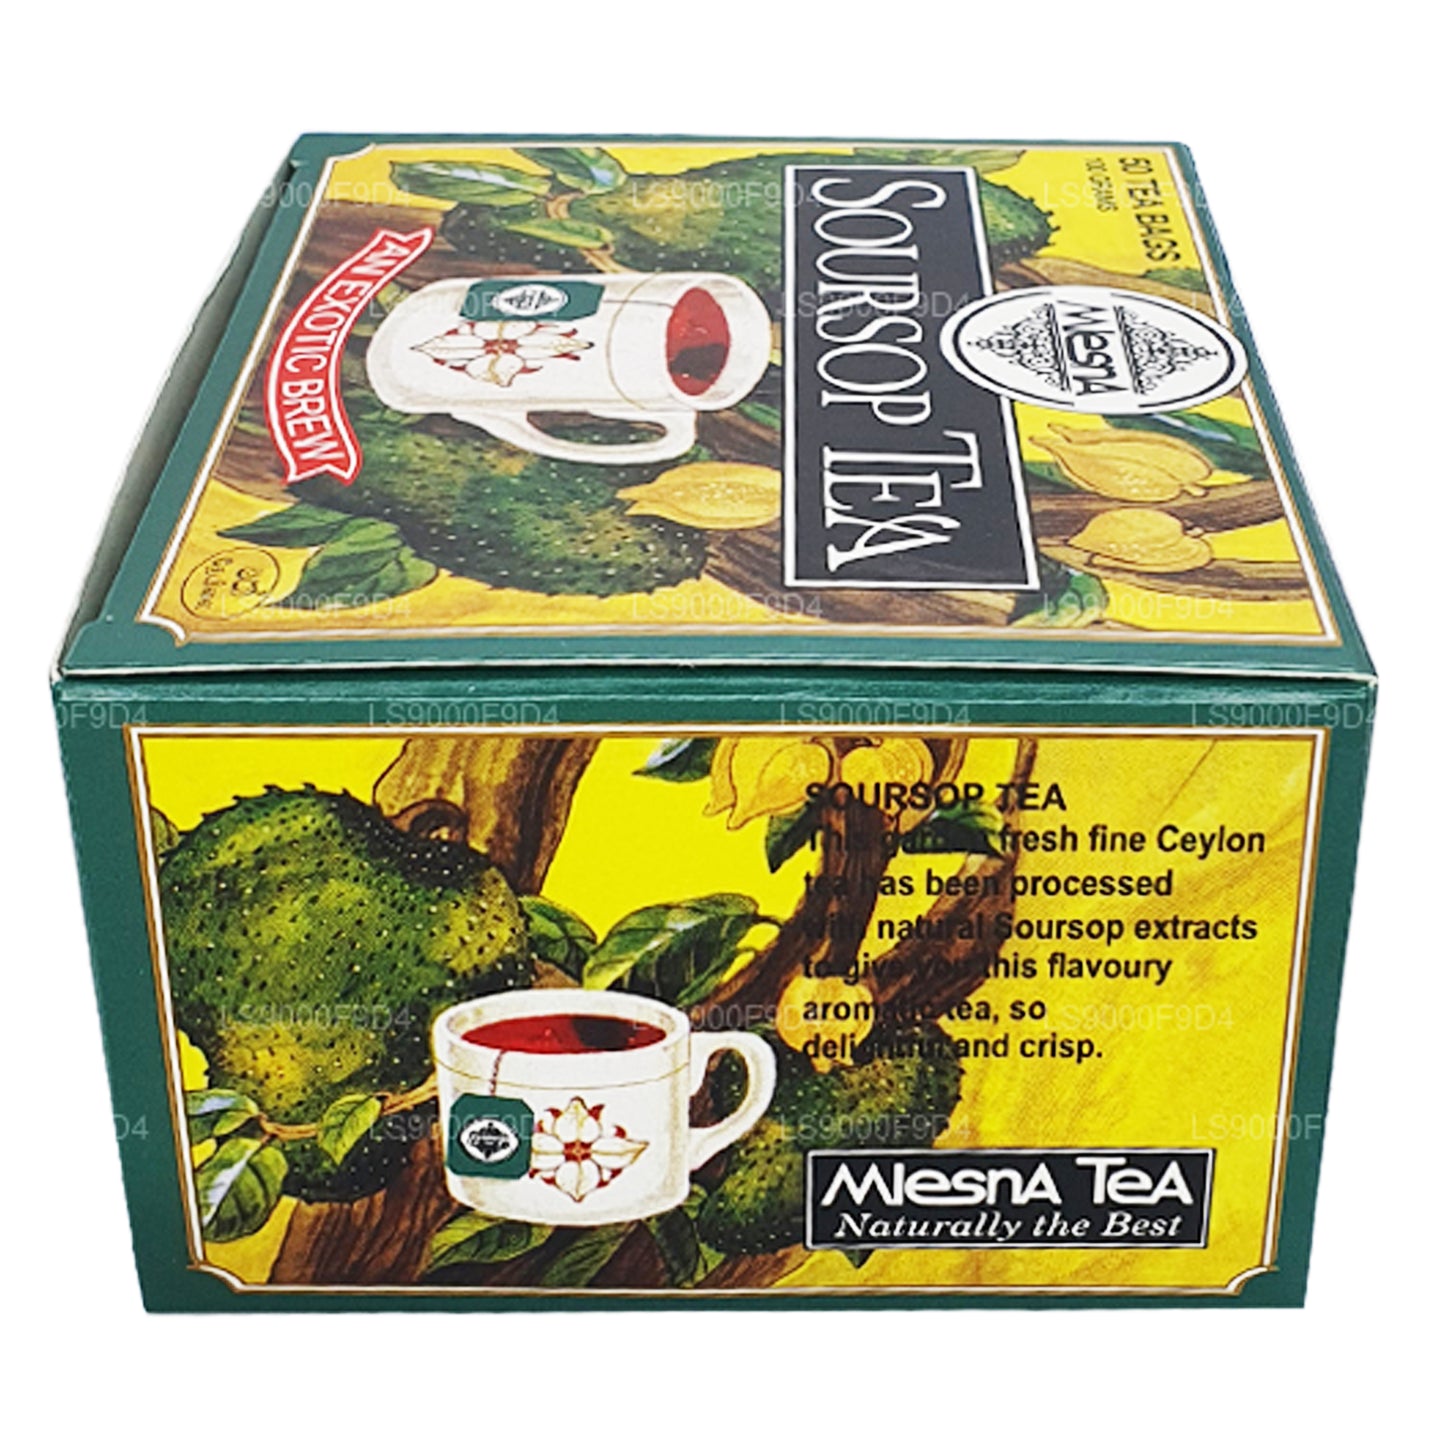 Mlesna Soursop Çay 'Egzotik Bira' 50 Çay Poşeti (100g)